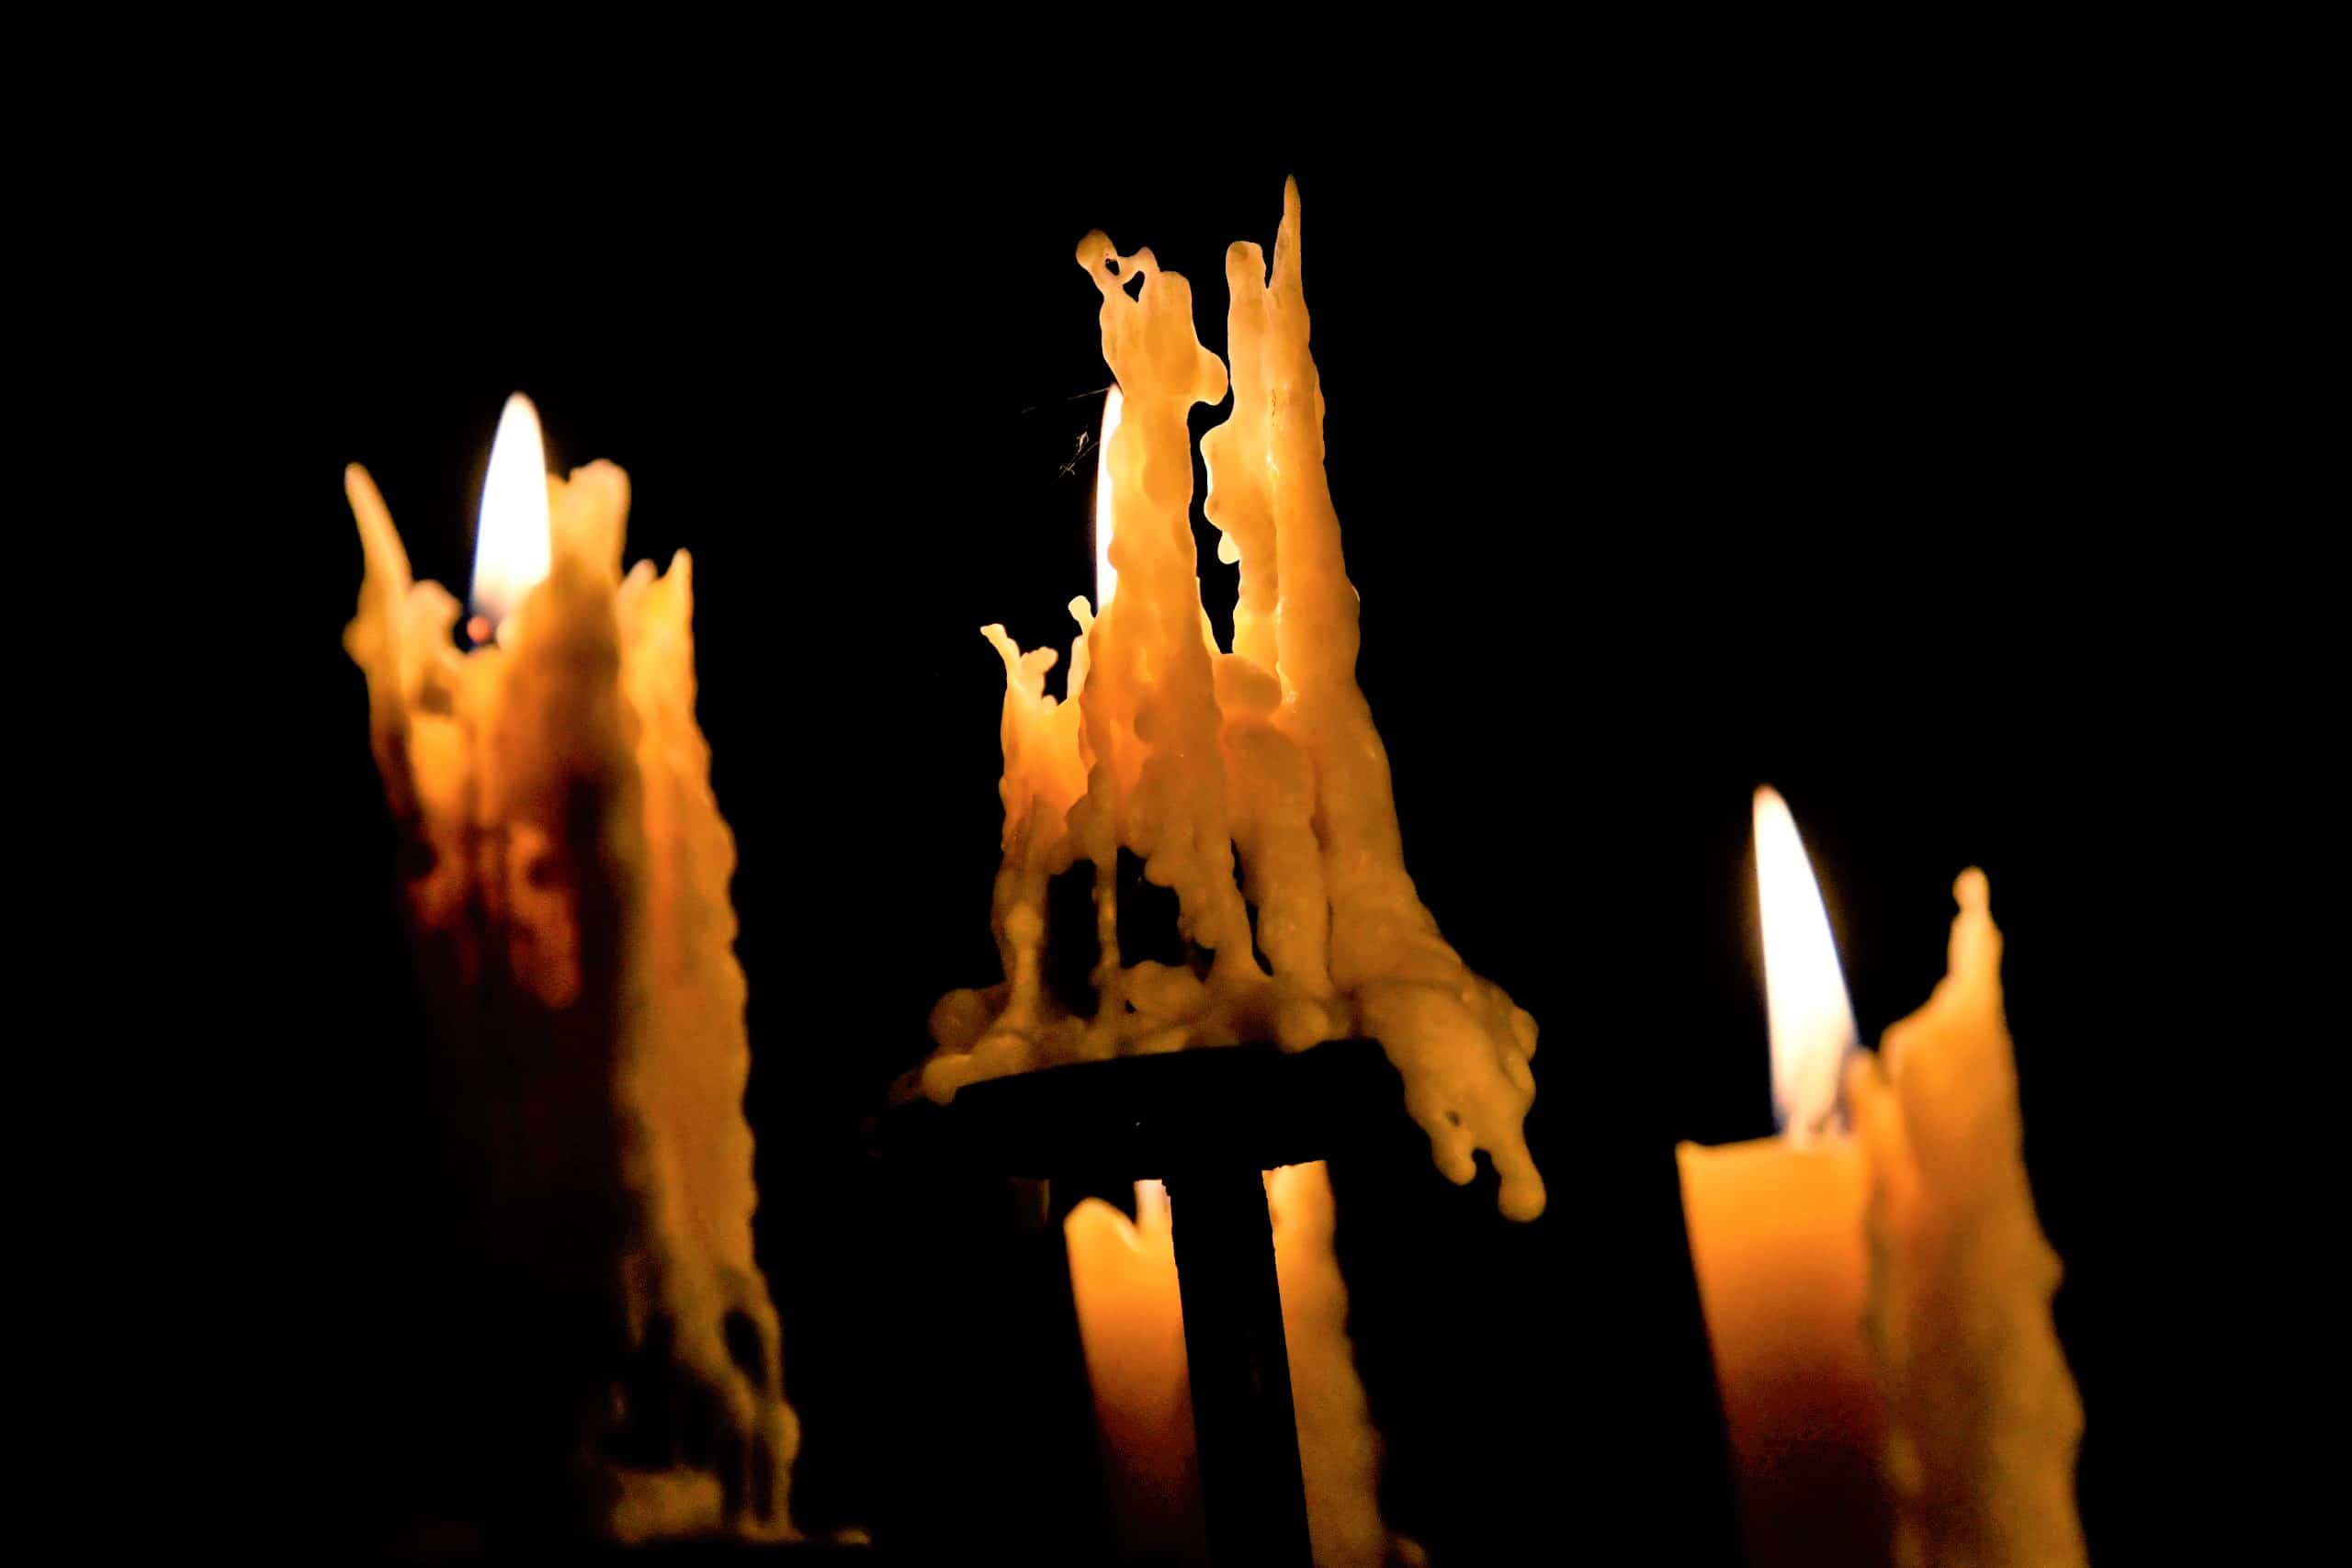 drei Kerzen